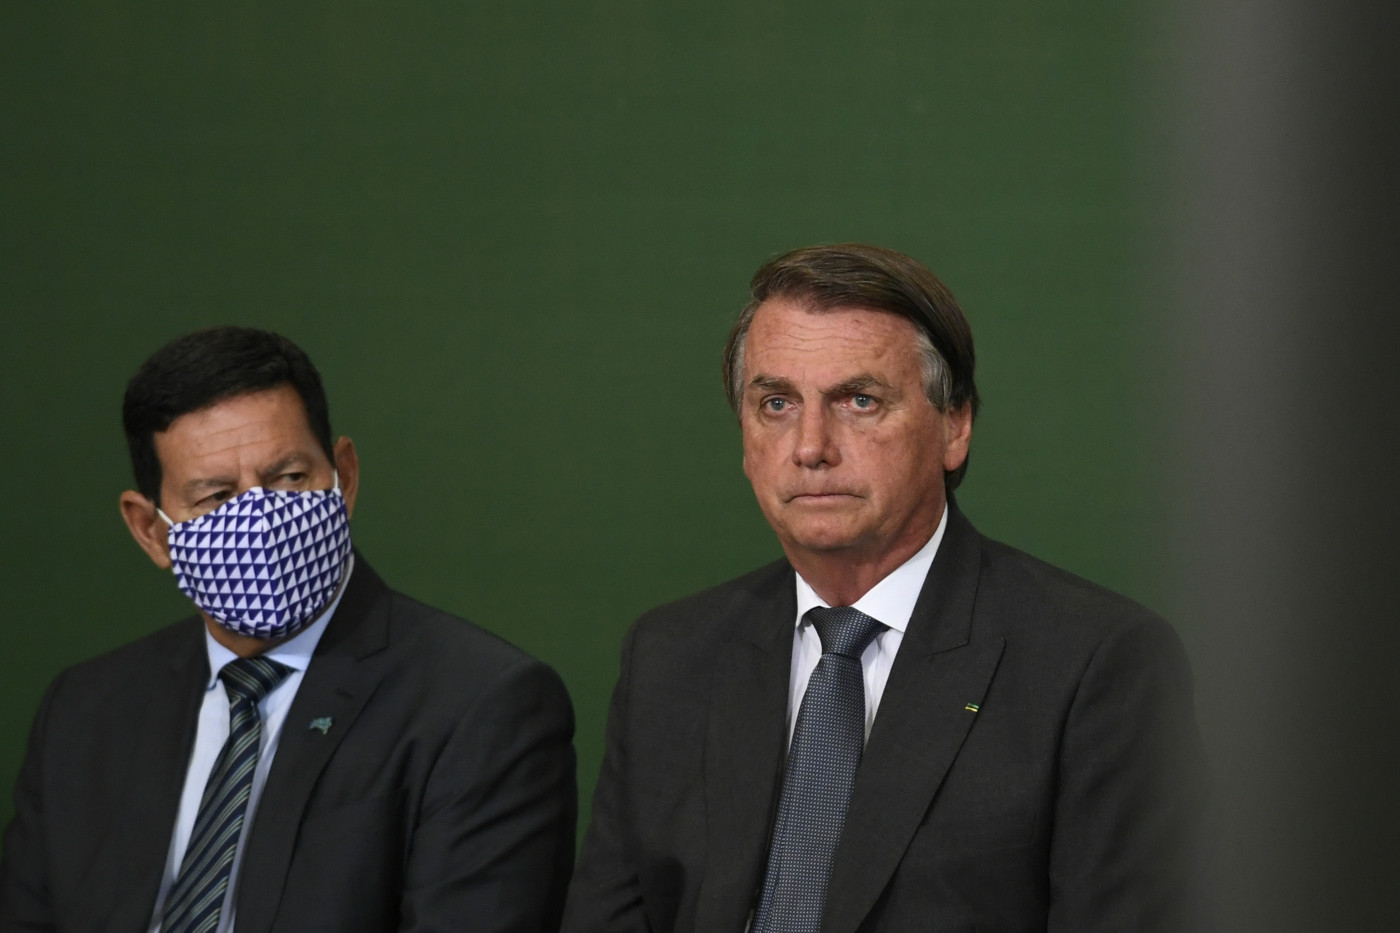 Vice-presidente Hamilton Mourão e o presidente Jair Bolsonaro